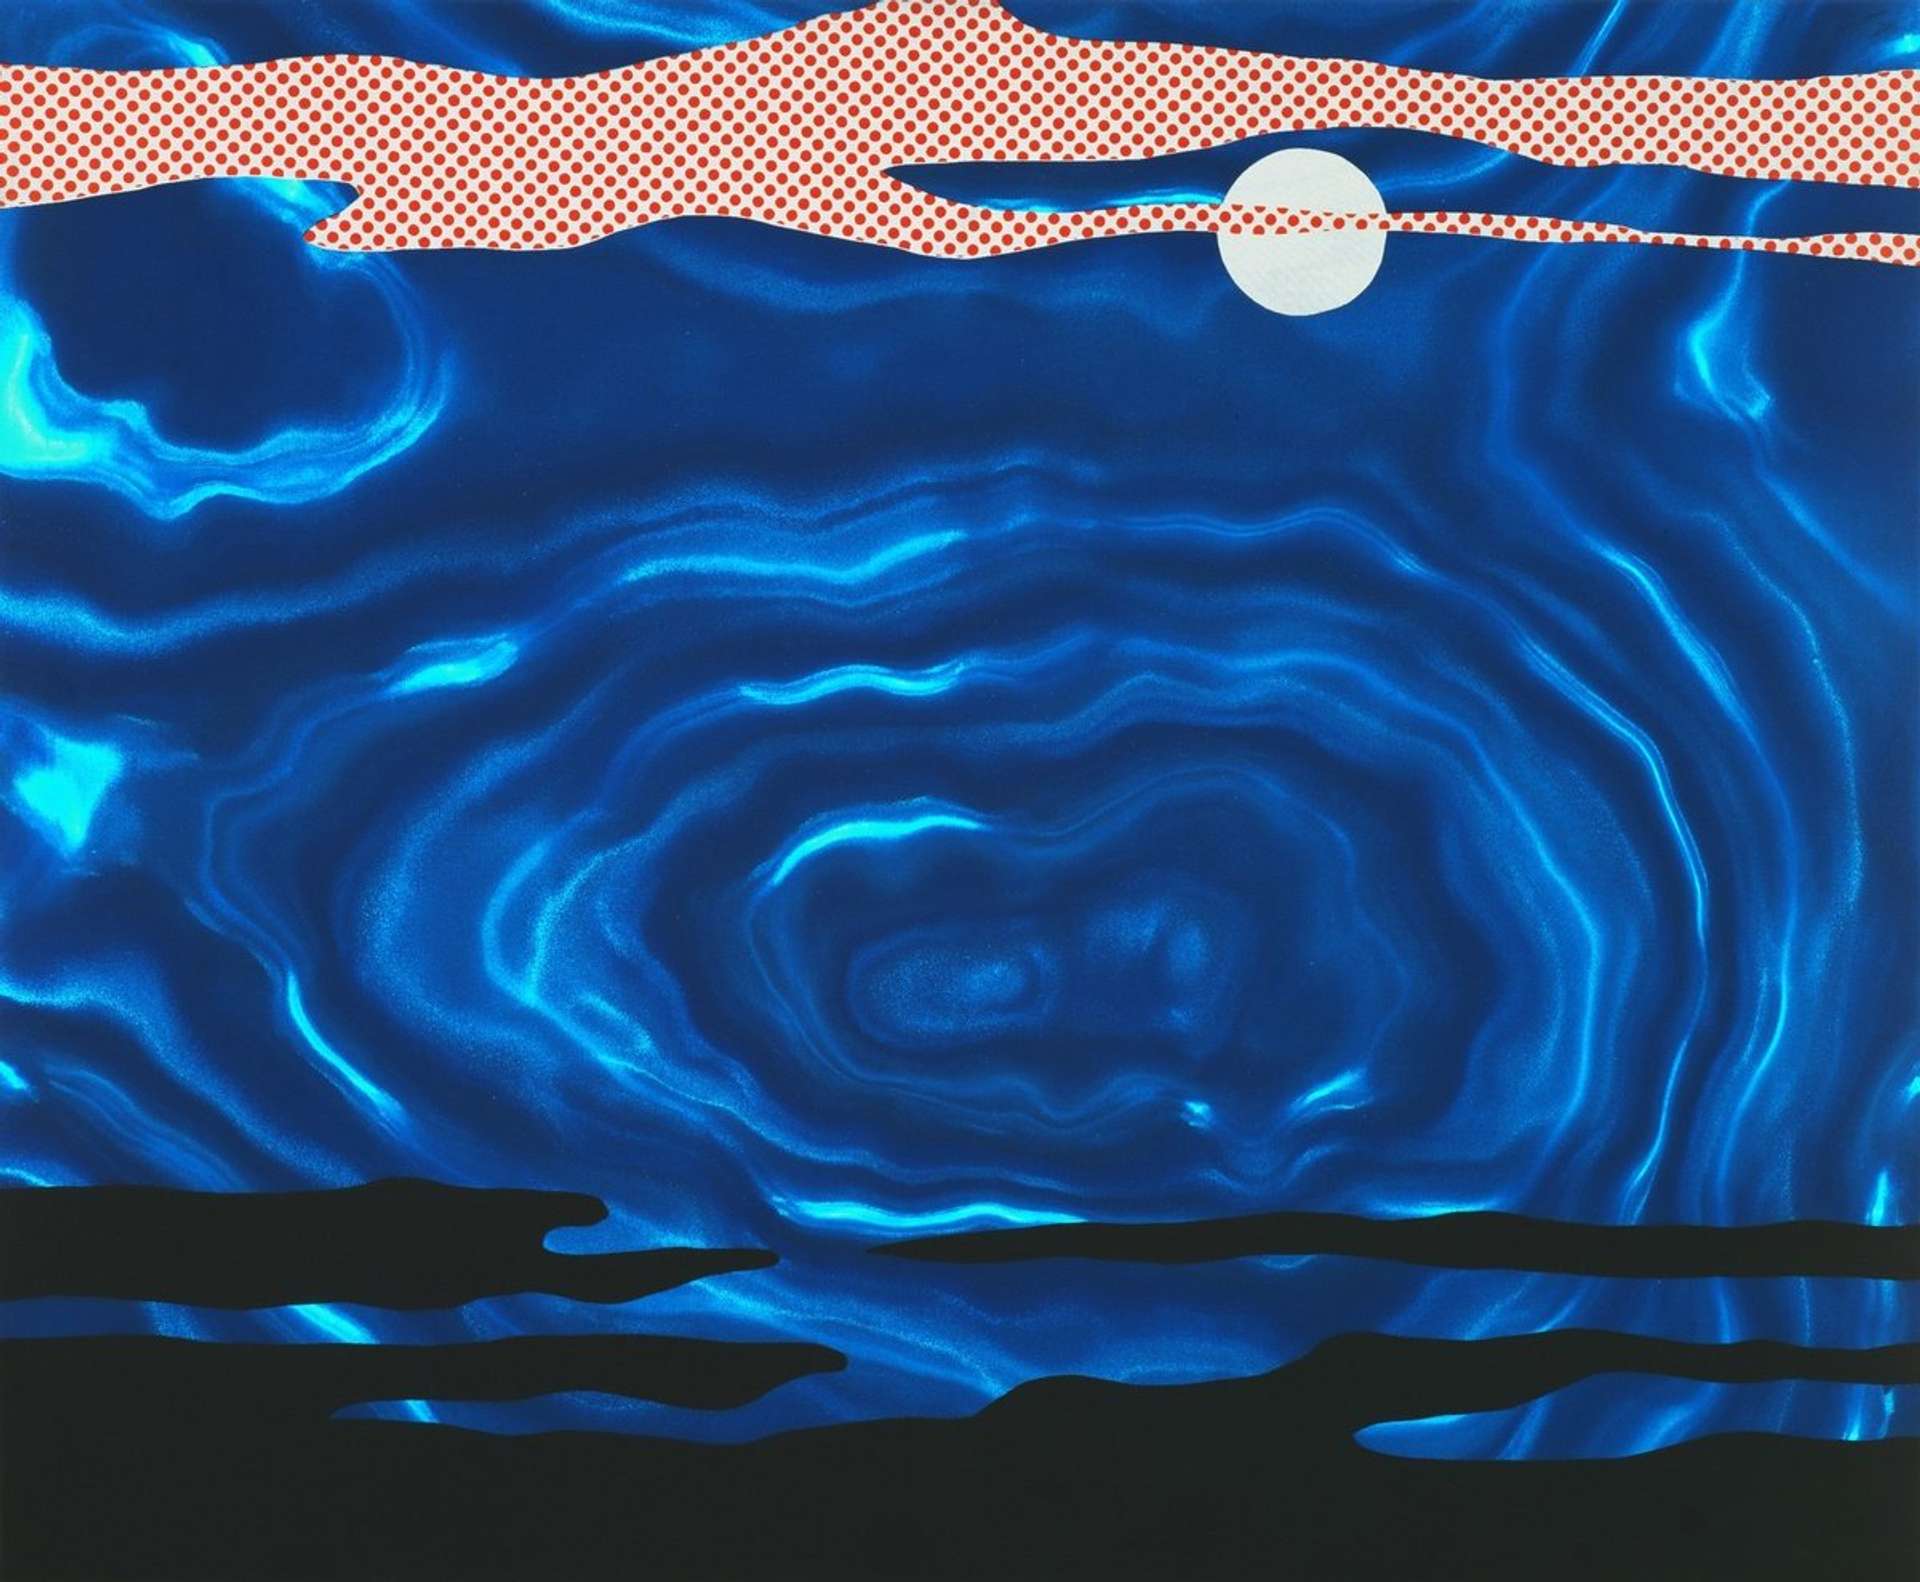 Moonscape by Roy Lichtenstein